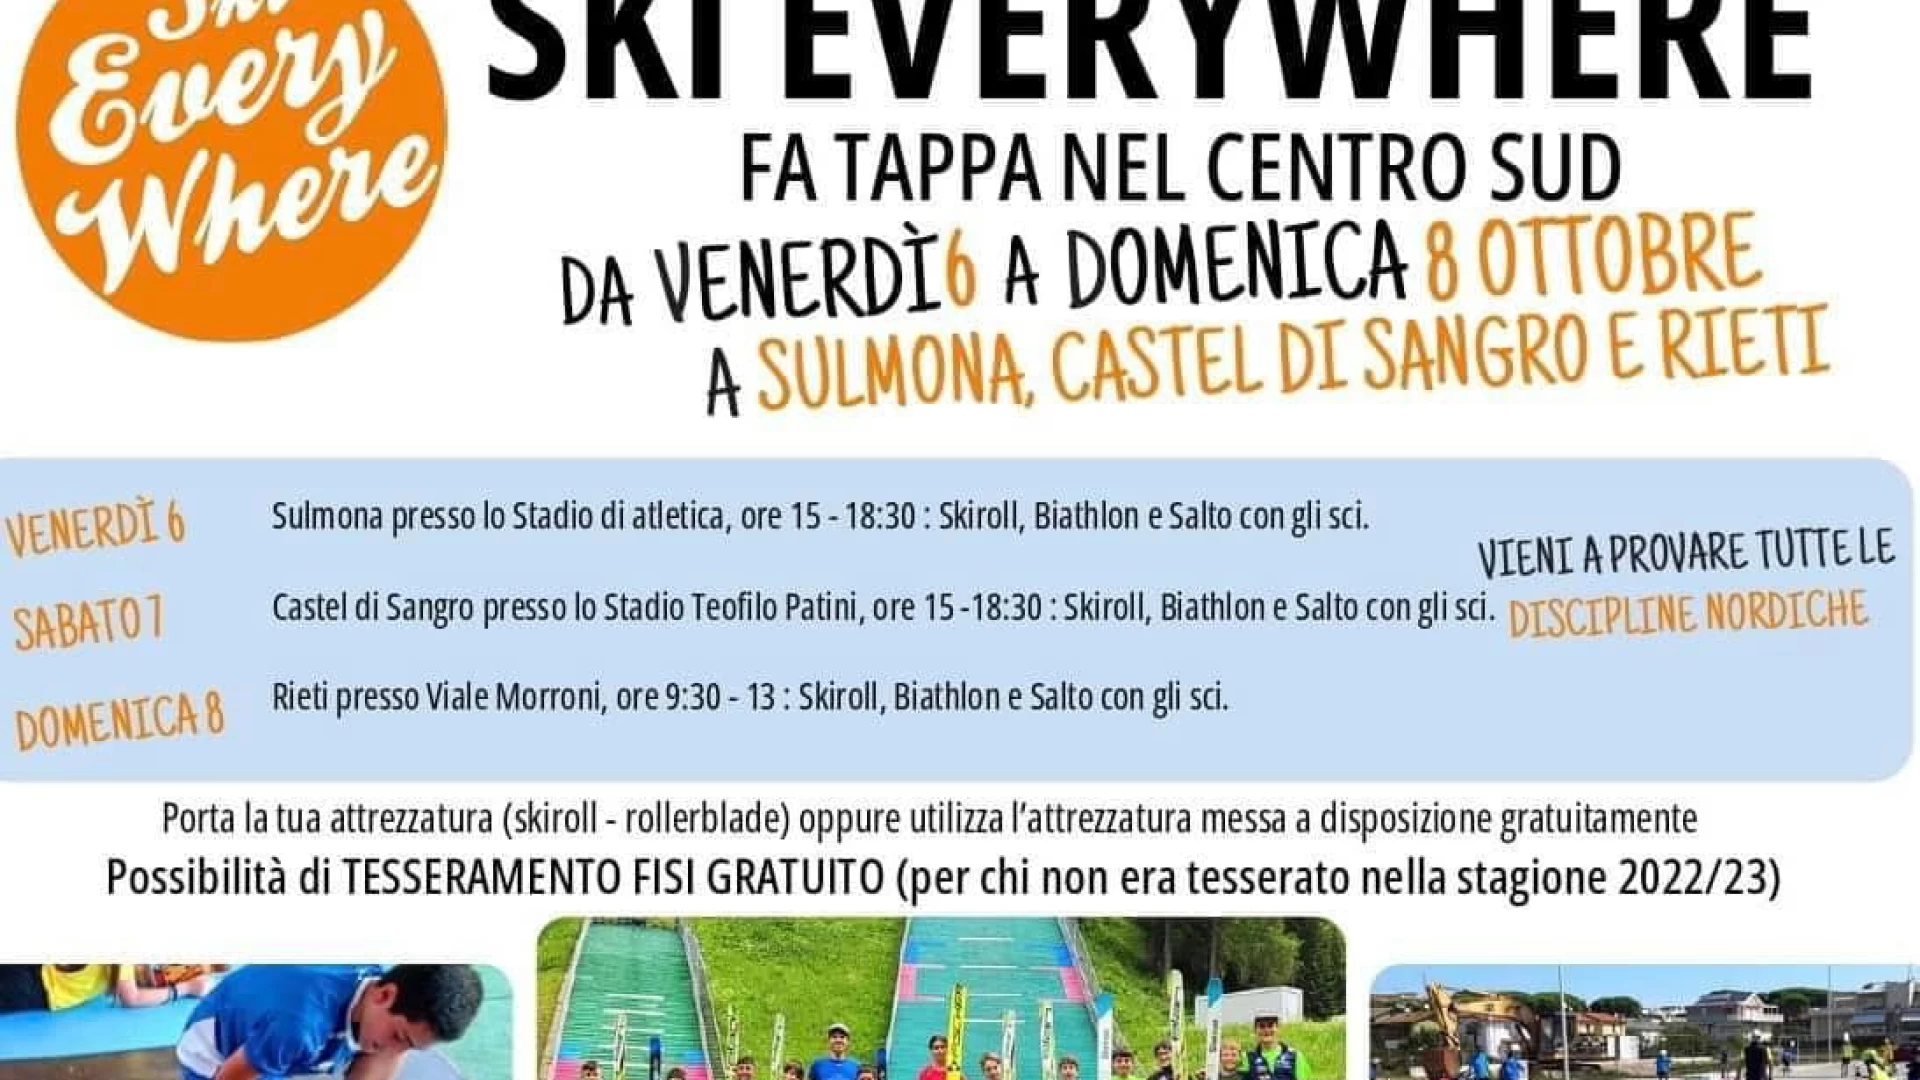 Il progetto Ski Everywhere nell'ambito dell'iniziativa "Sport e Salute" farà tappa sabato 7 ottobre a Castel Di Sangro.